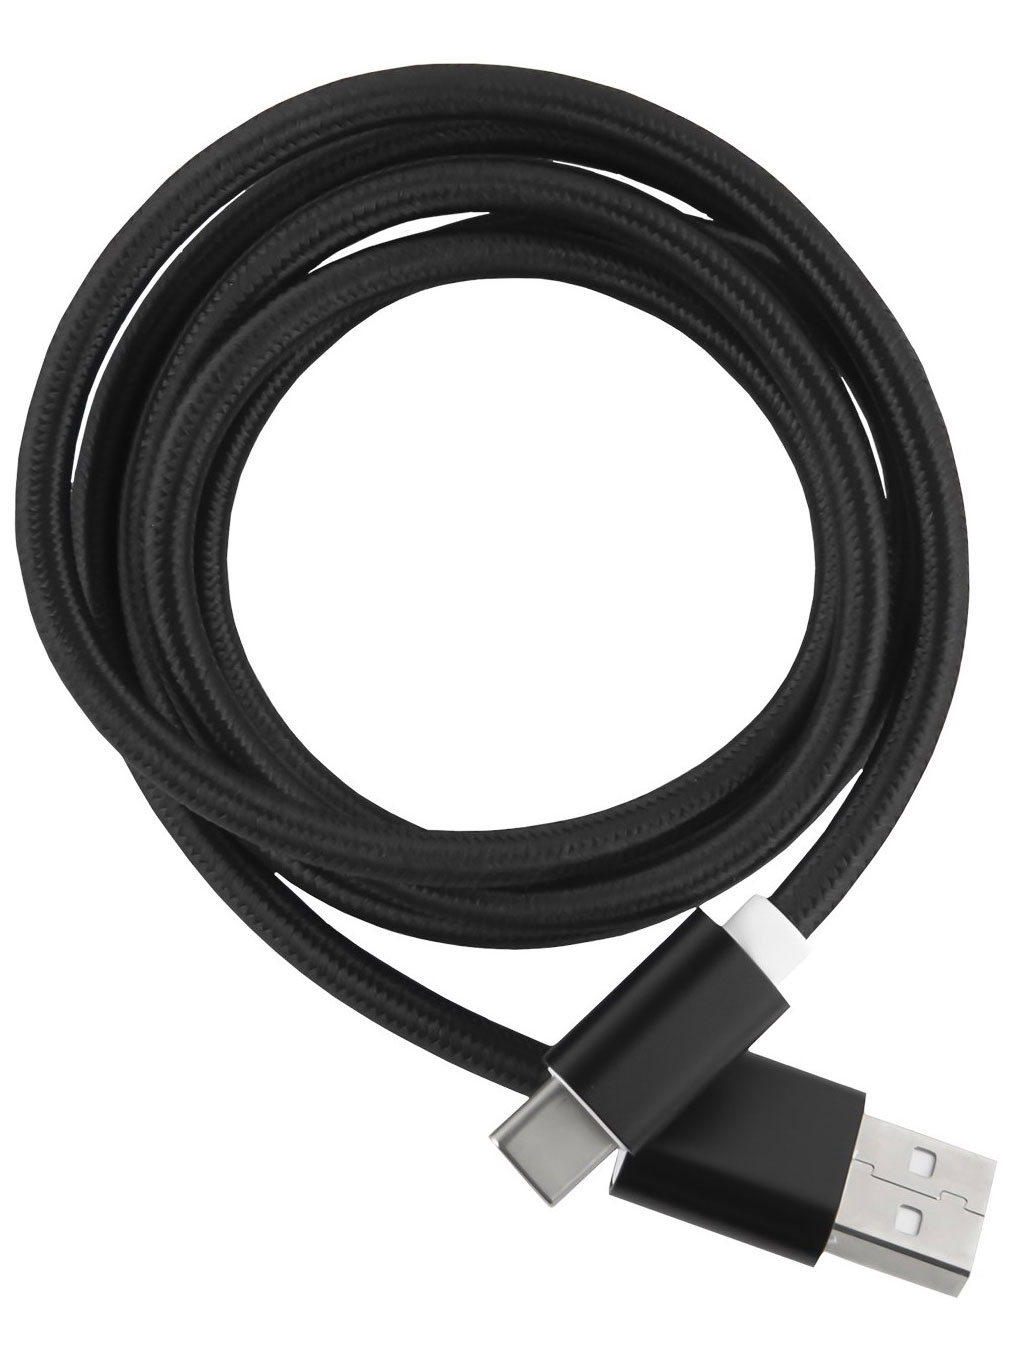 Кабель Red Line USB-Type-C 2.0 нейлоновая оплетка, черный дата кабель hoco x38 cool usb type c черный 10567